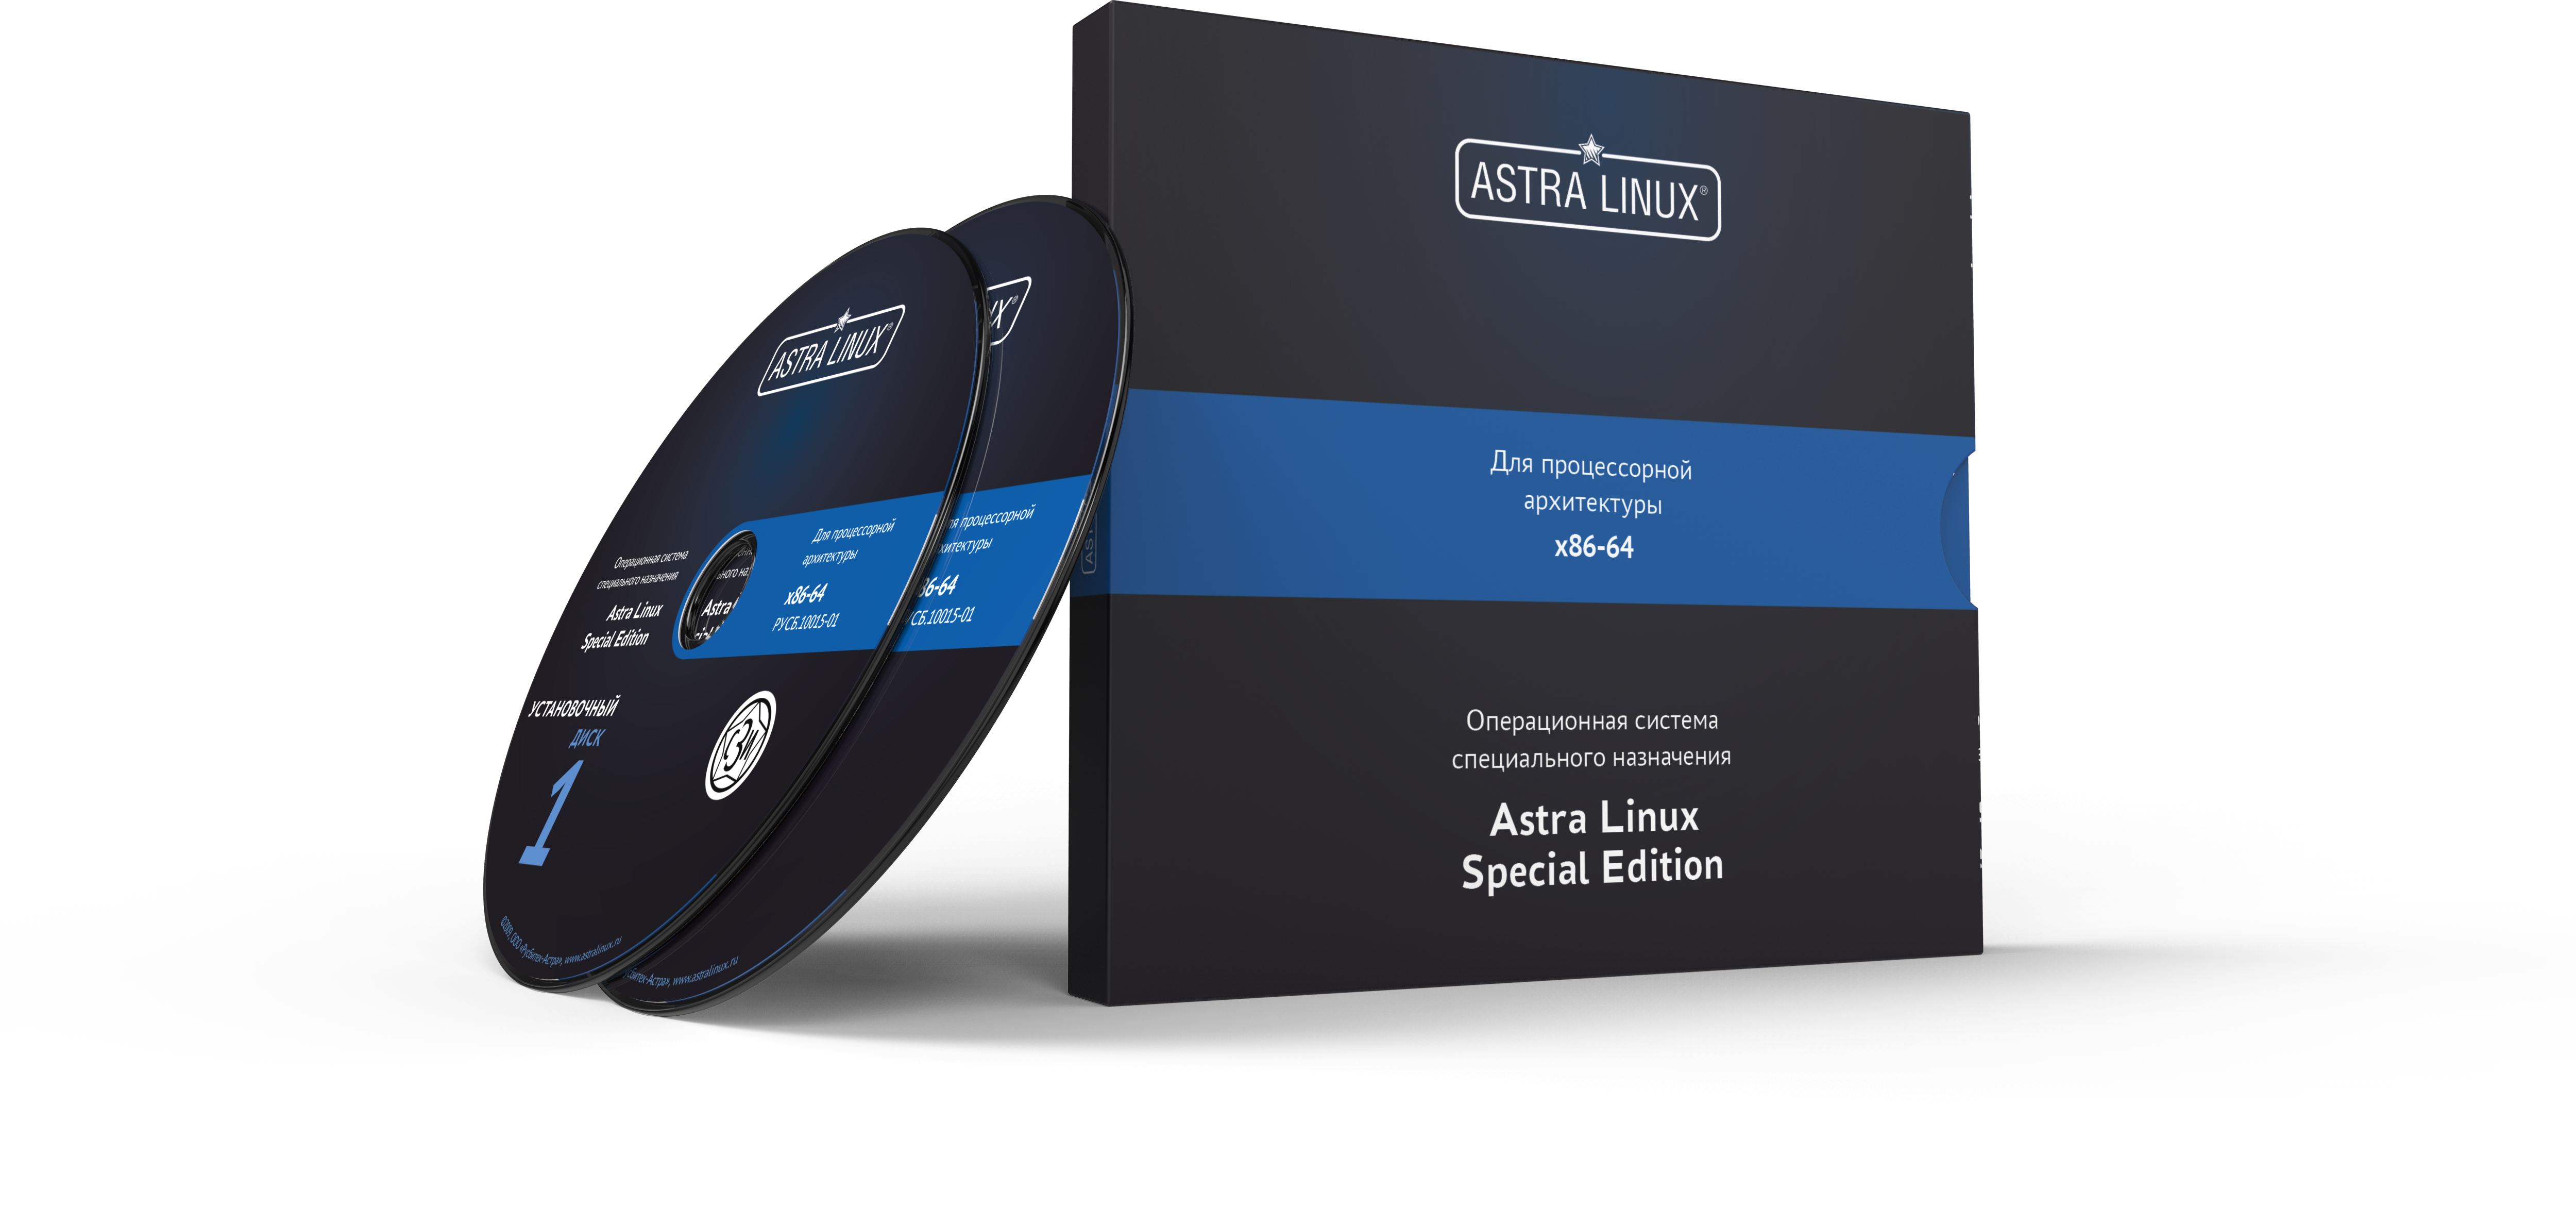 Astra Linux Special Edition 1.7 - Воронеж, РУСБ.10015-01 (ФСТЭК), OEM, без огр. срока, ТП "Привилегированная" 36 мес.